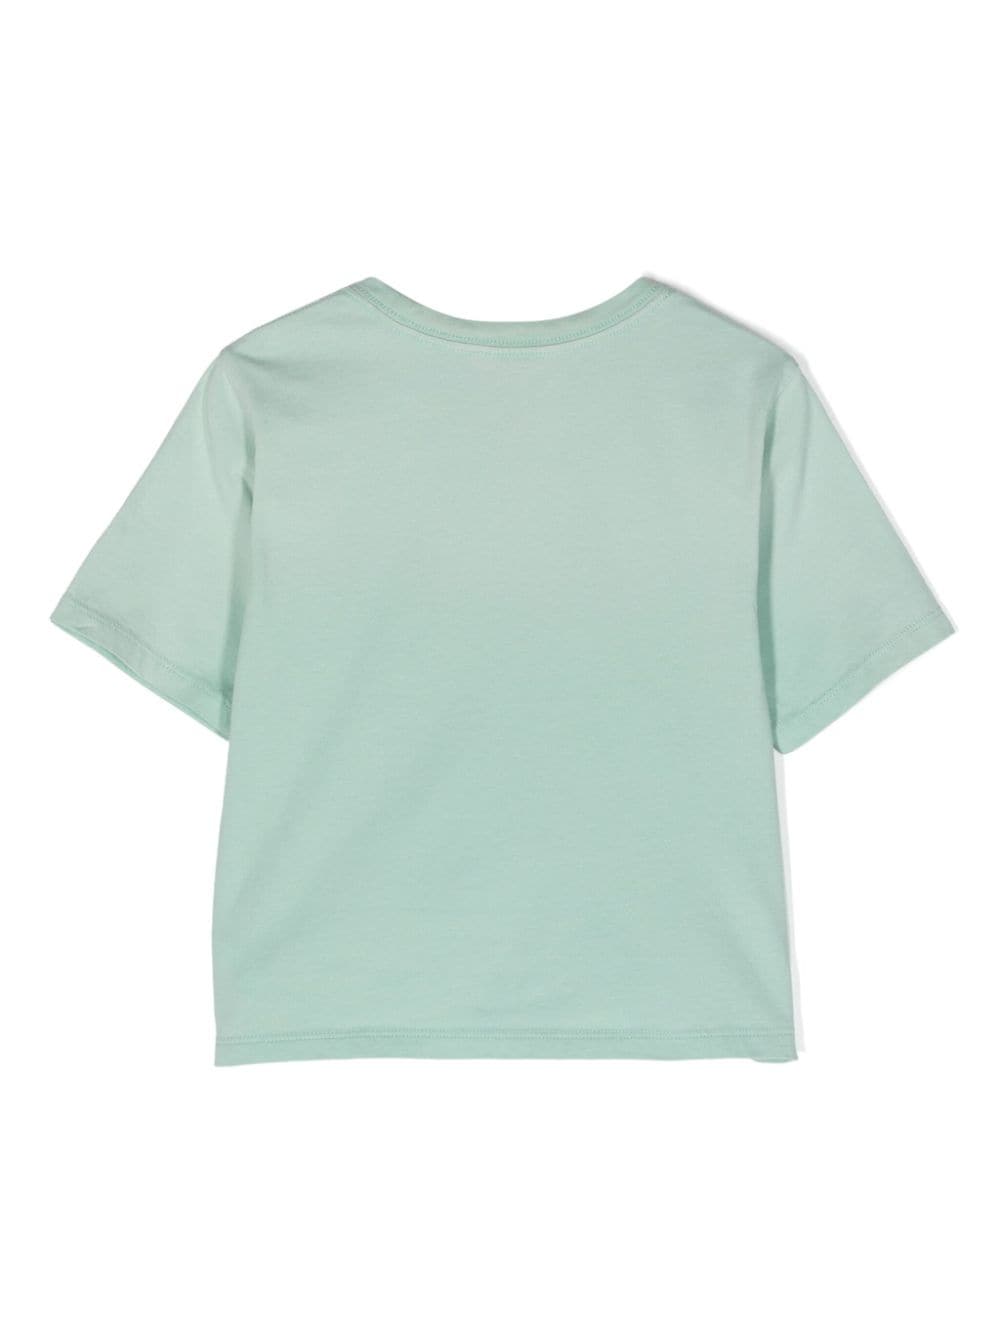 Ralph Lauren Kids Katoenen T-shirt - Groen